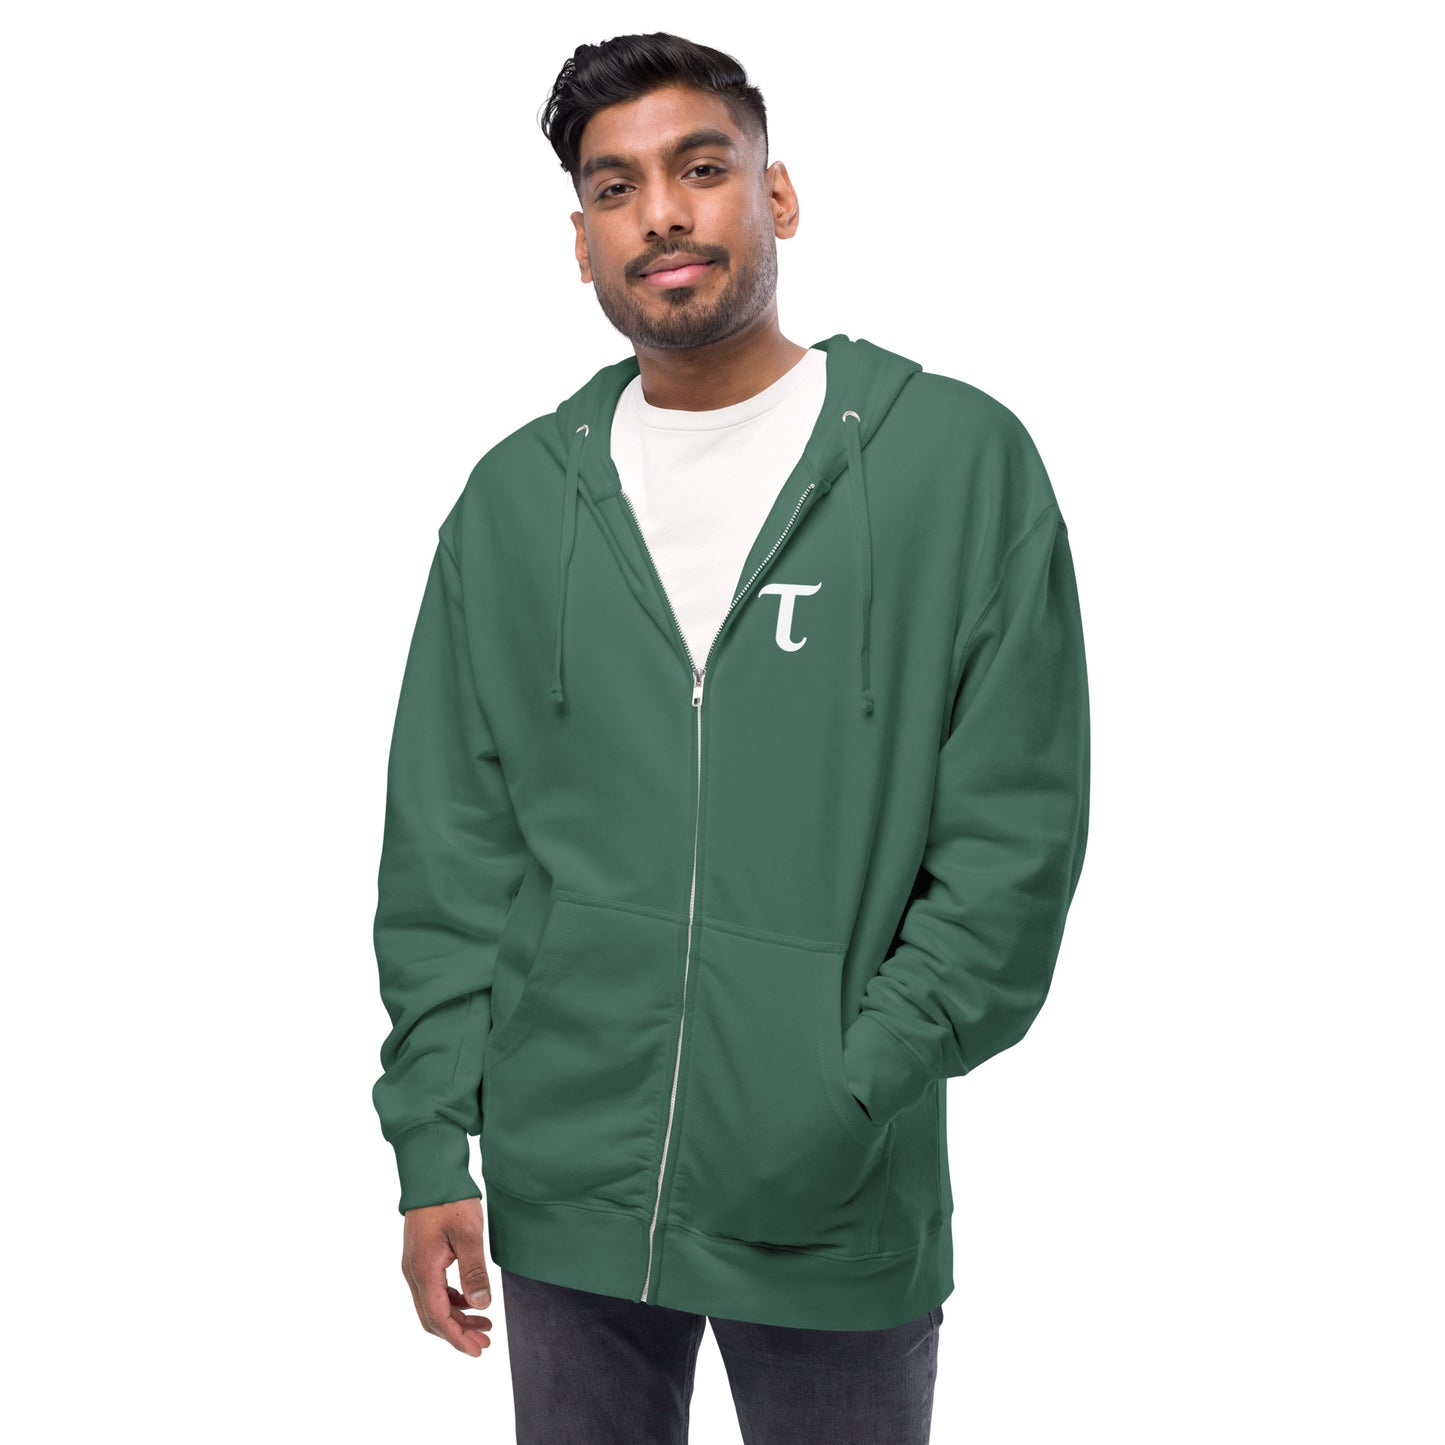 Who is Yuma Rao? fleece zip up hoodie